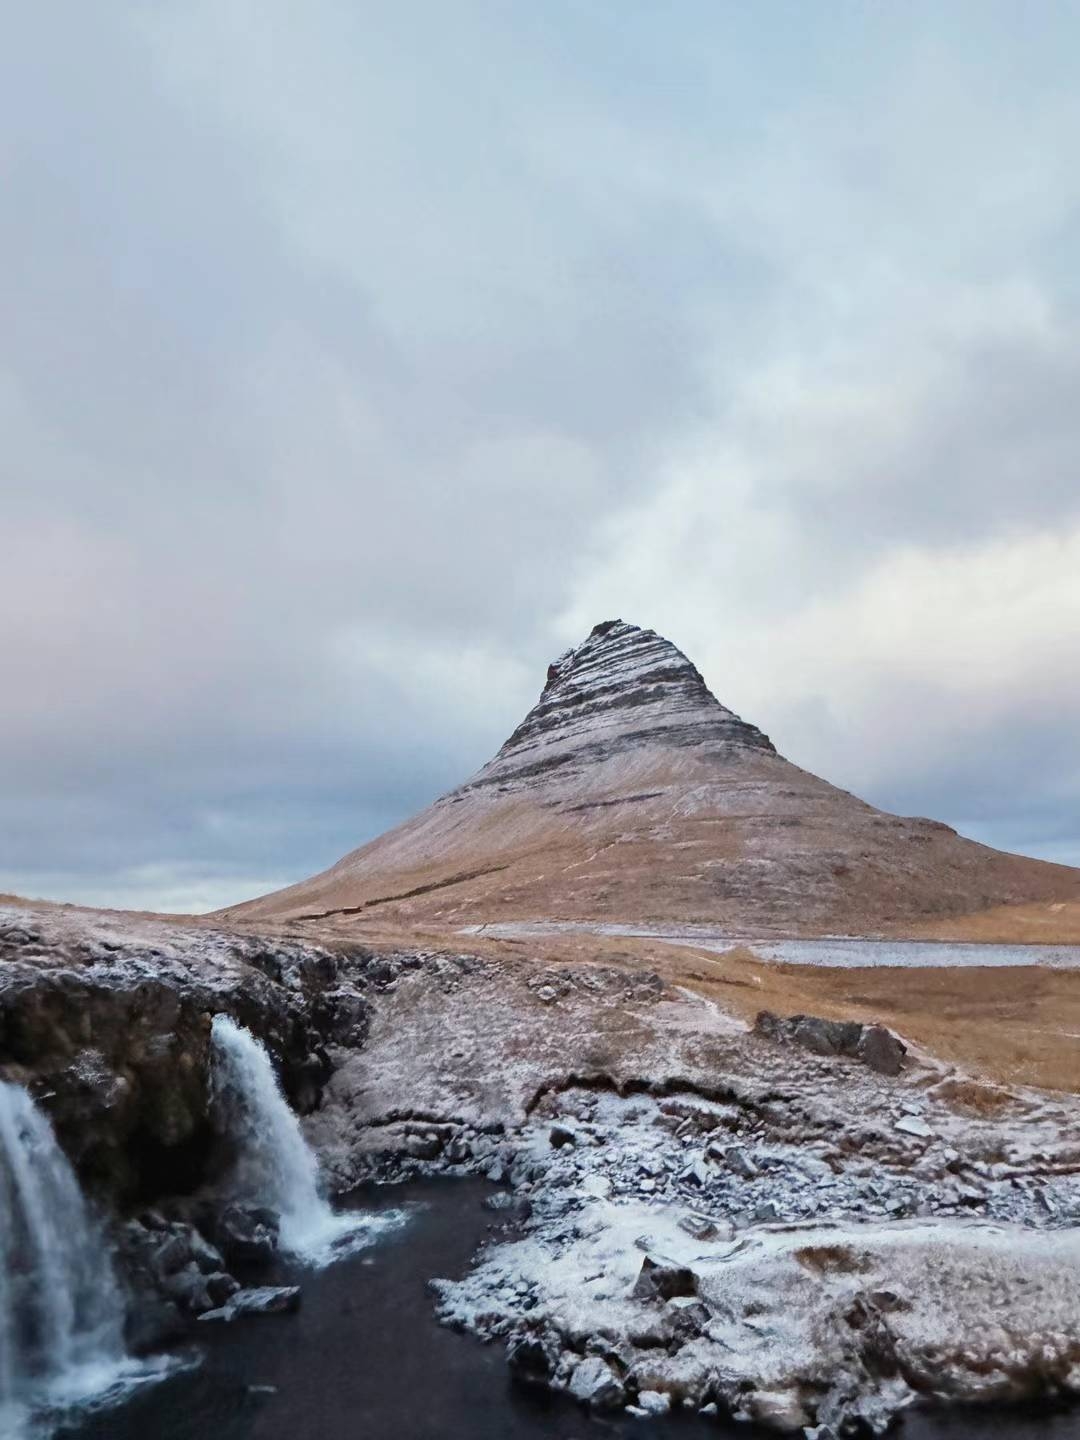 遗世的美好，在冰岛遇见不一样的地球。